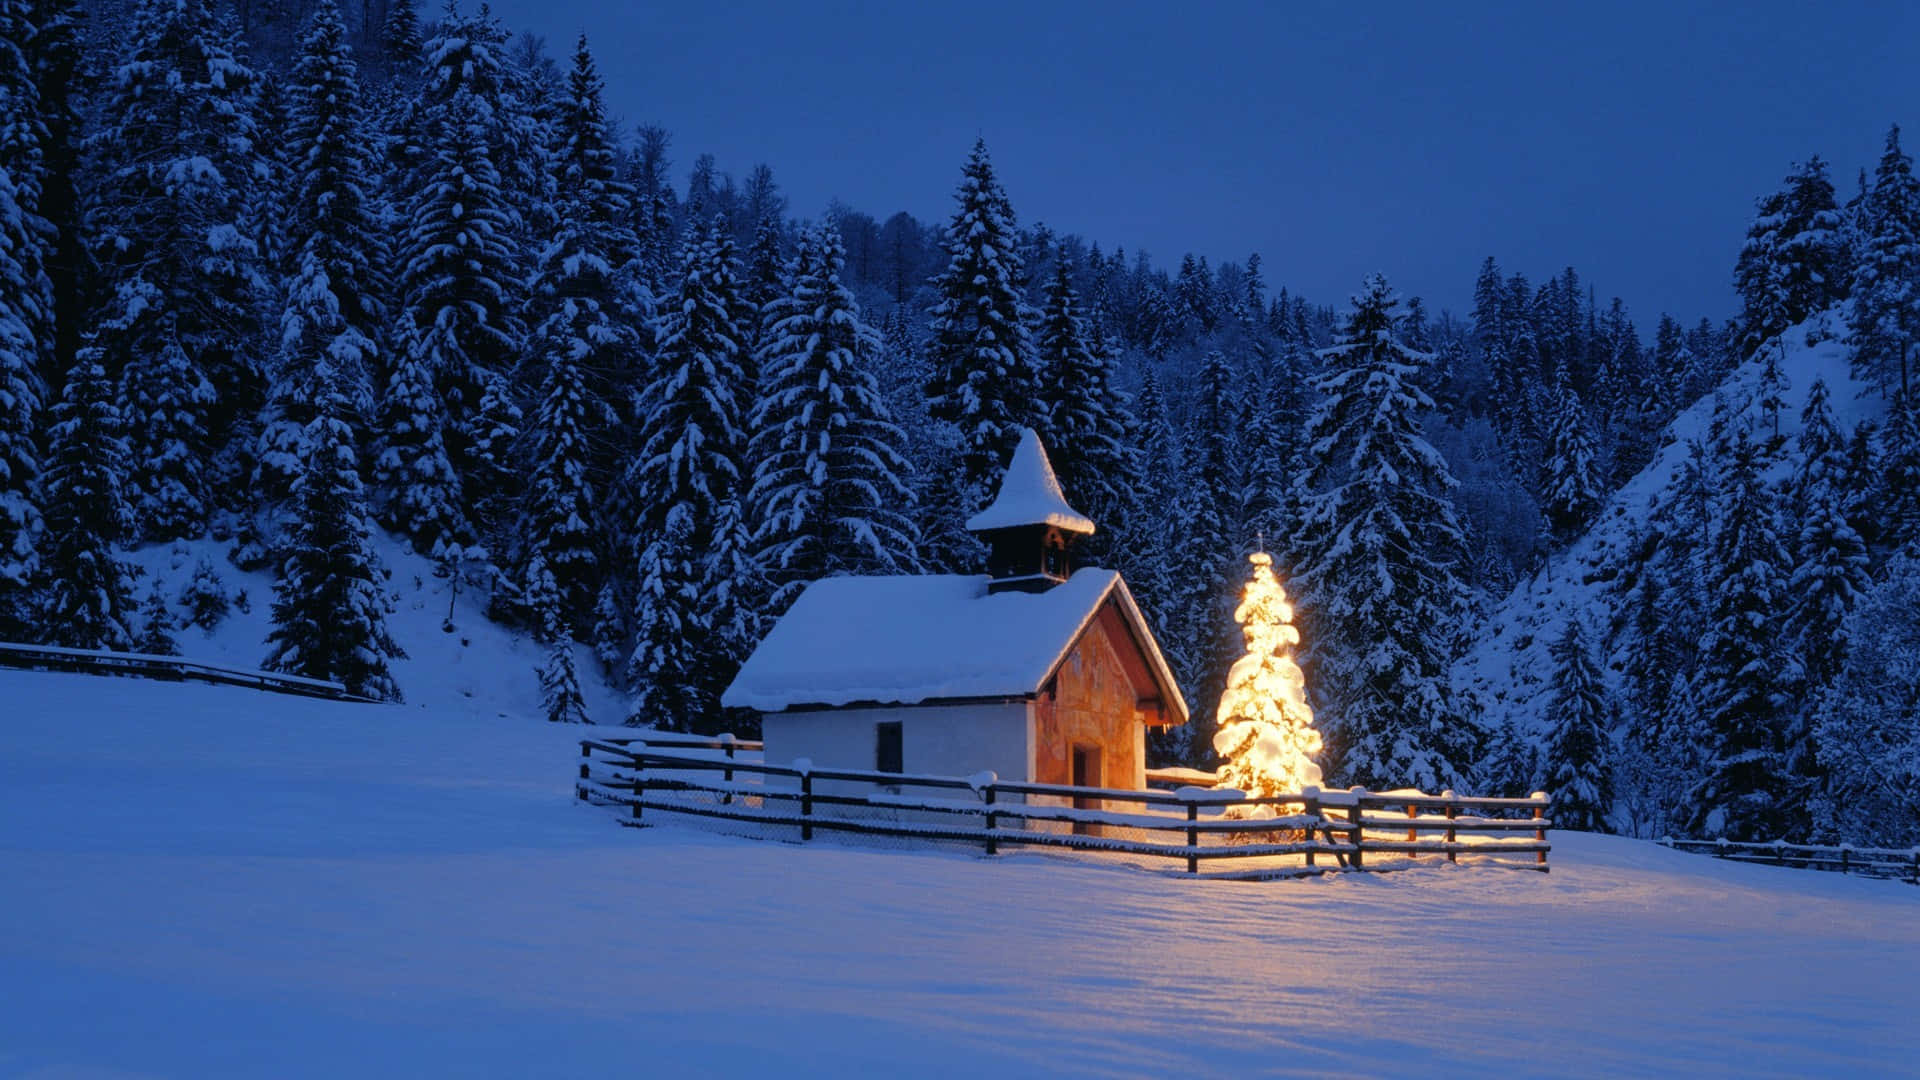 Paesaggiocon Piccola Casa Di Natale E Sfondo Di Neve.